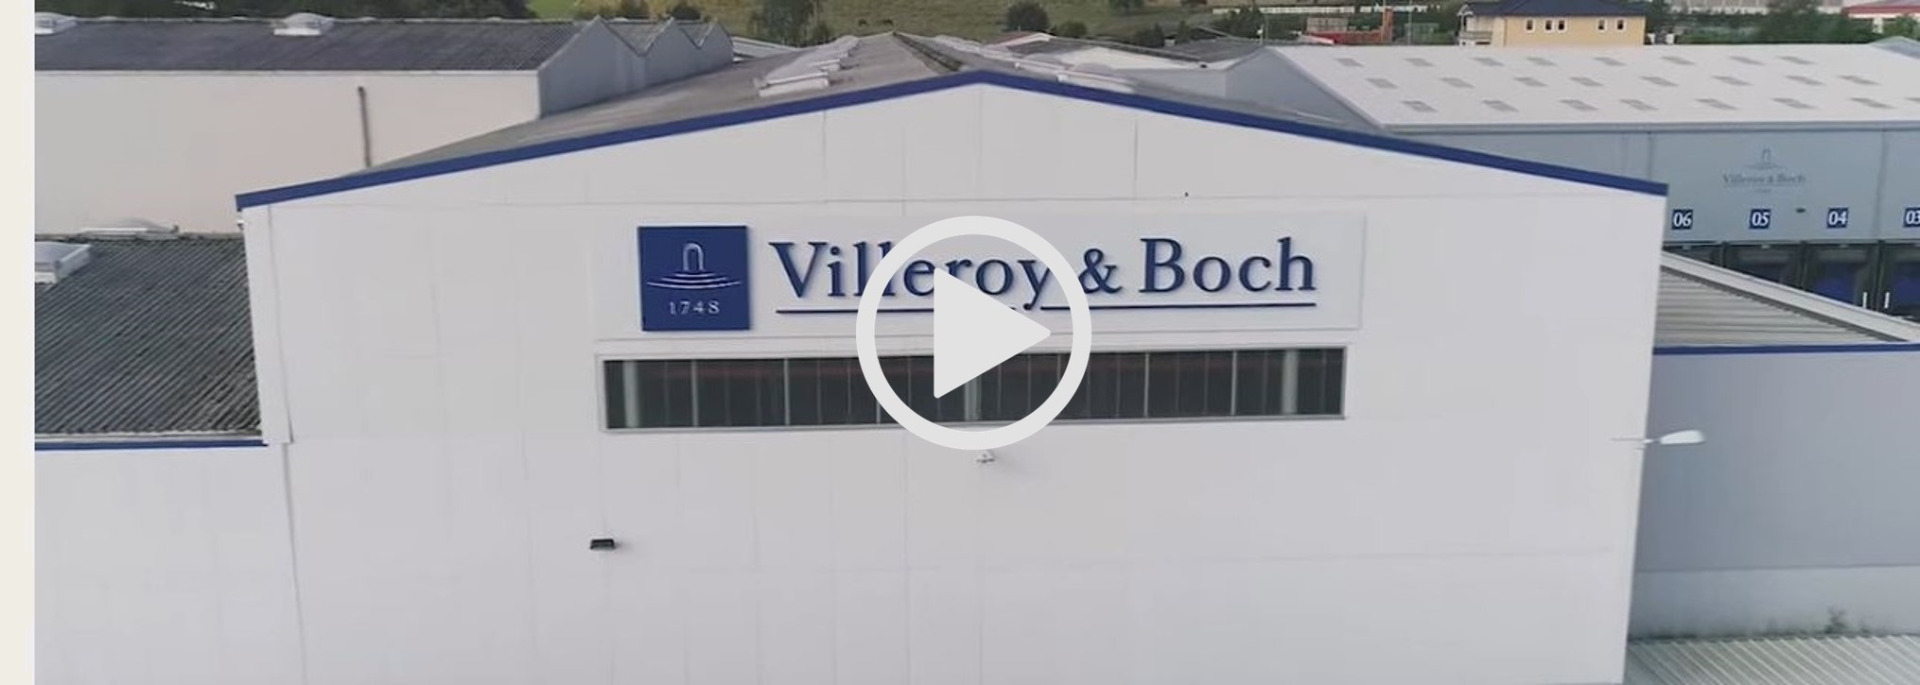 Villeroy und Boch Badkeramik Produktion